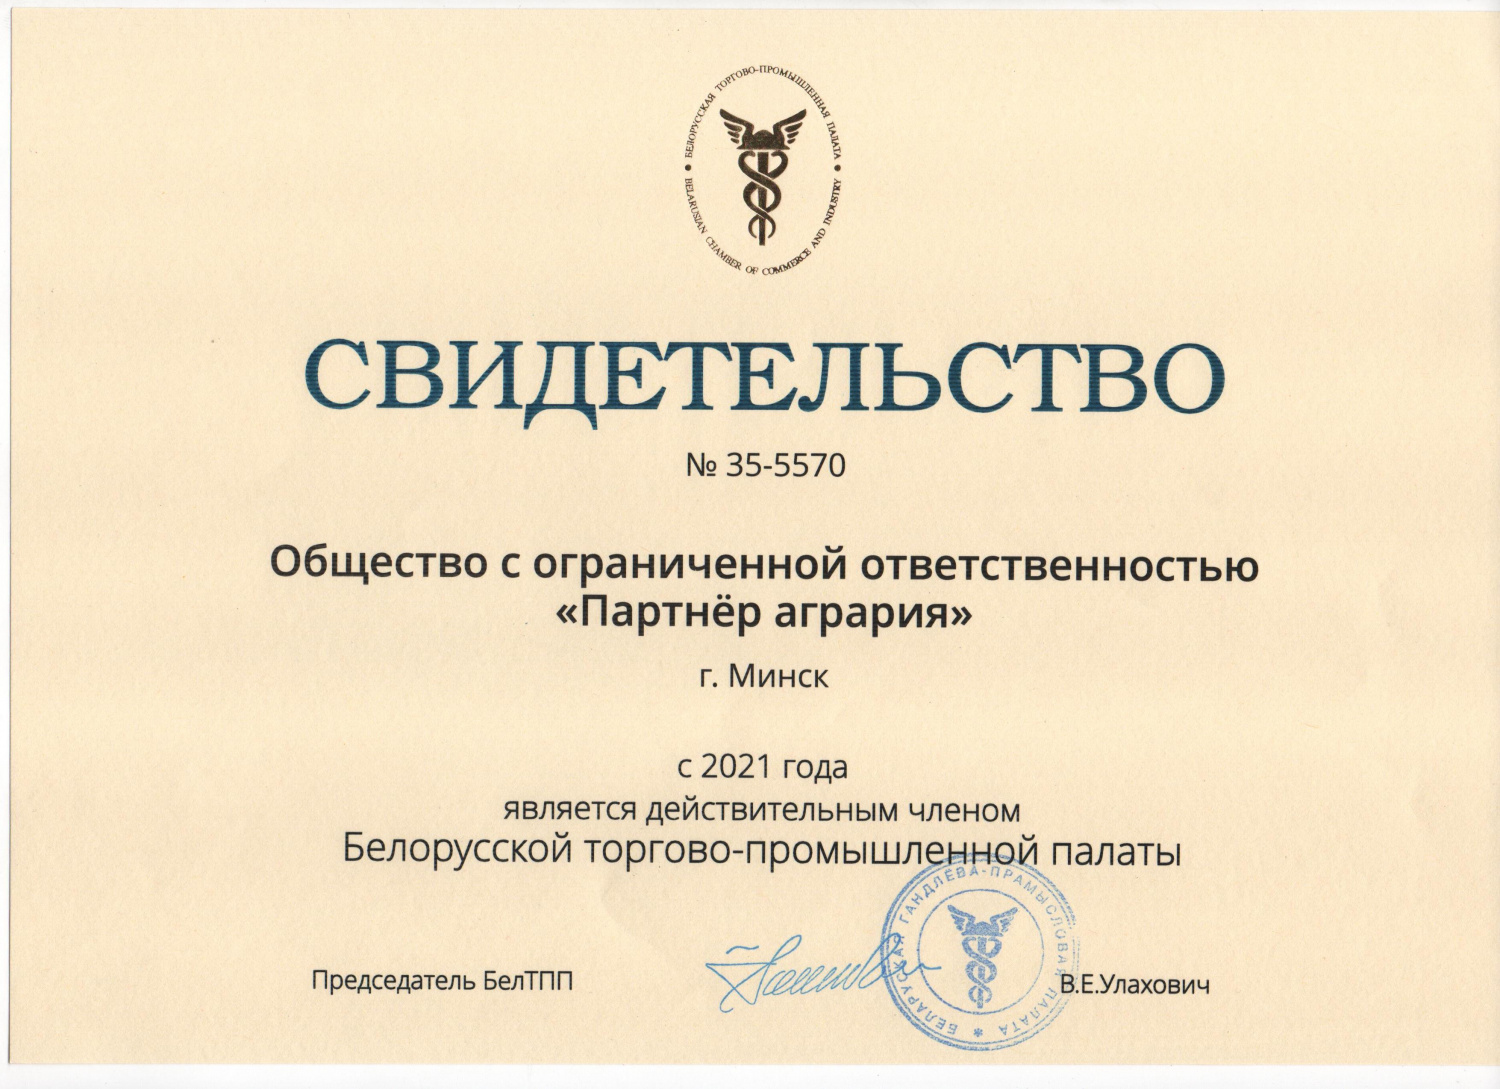 Компания ООО «Партнер агрария» стала членом Белорусской торгово-промышленной палаты.